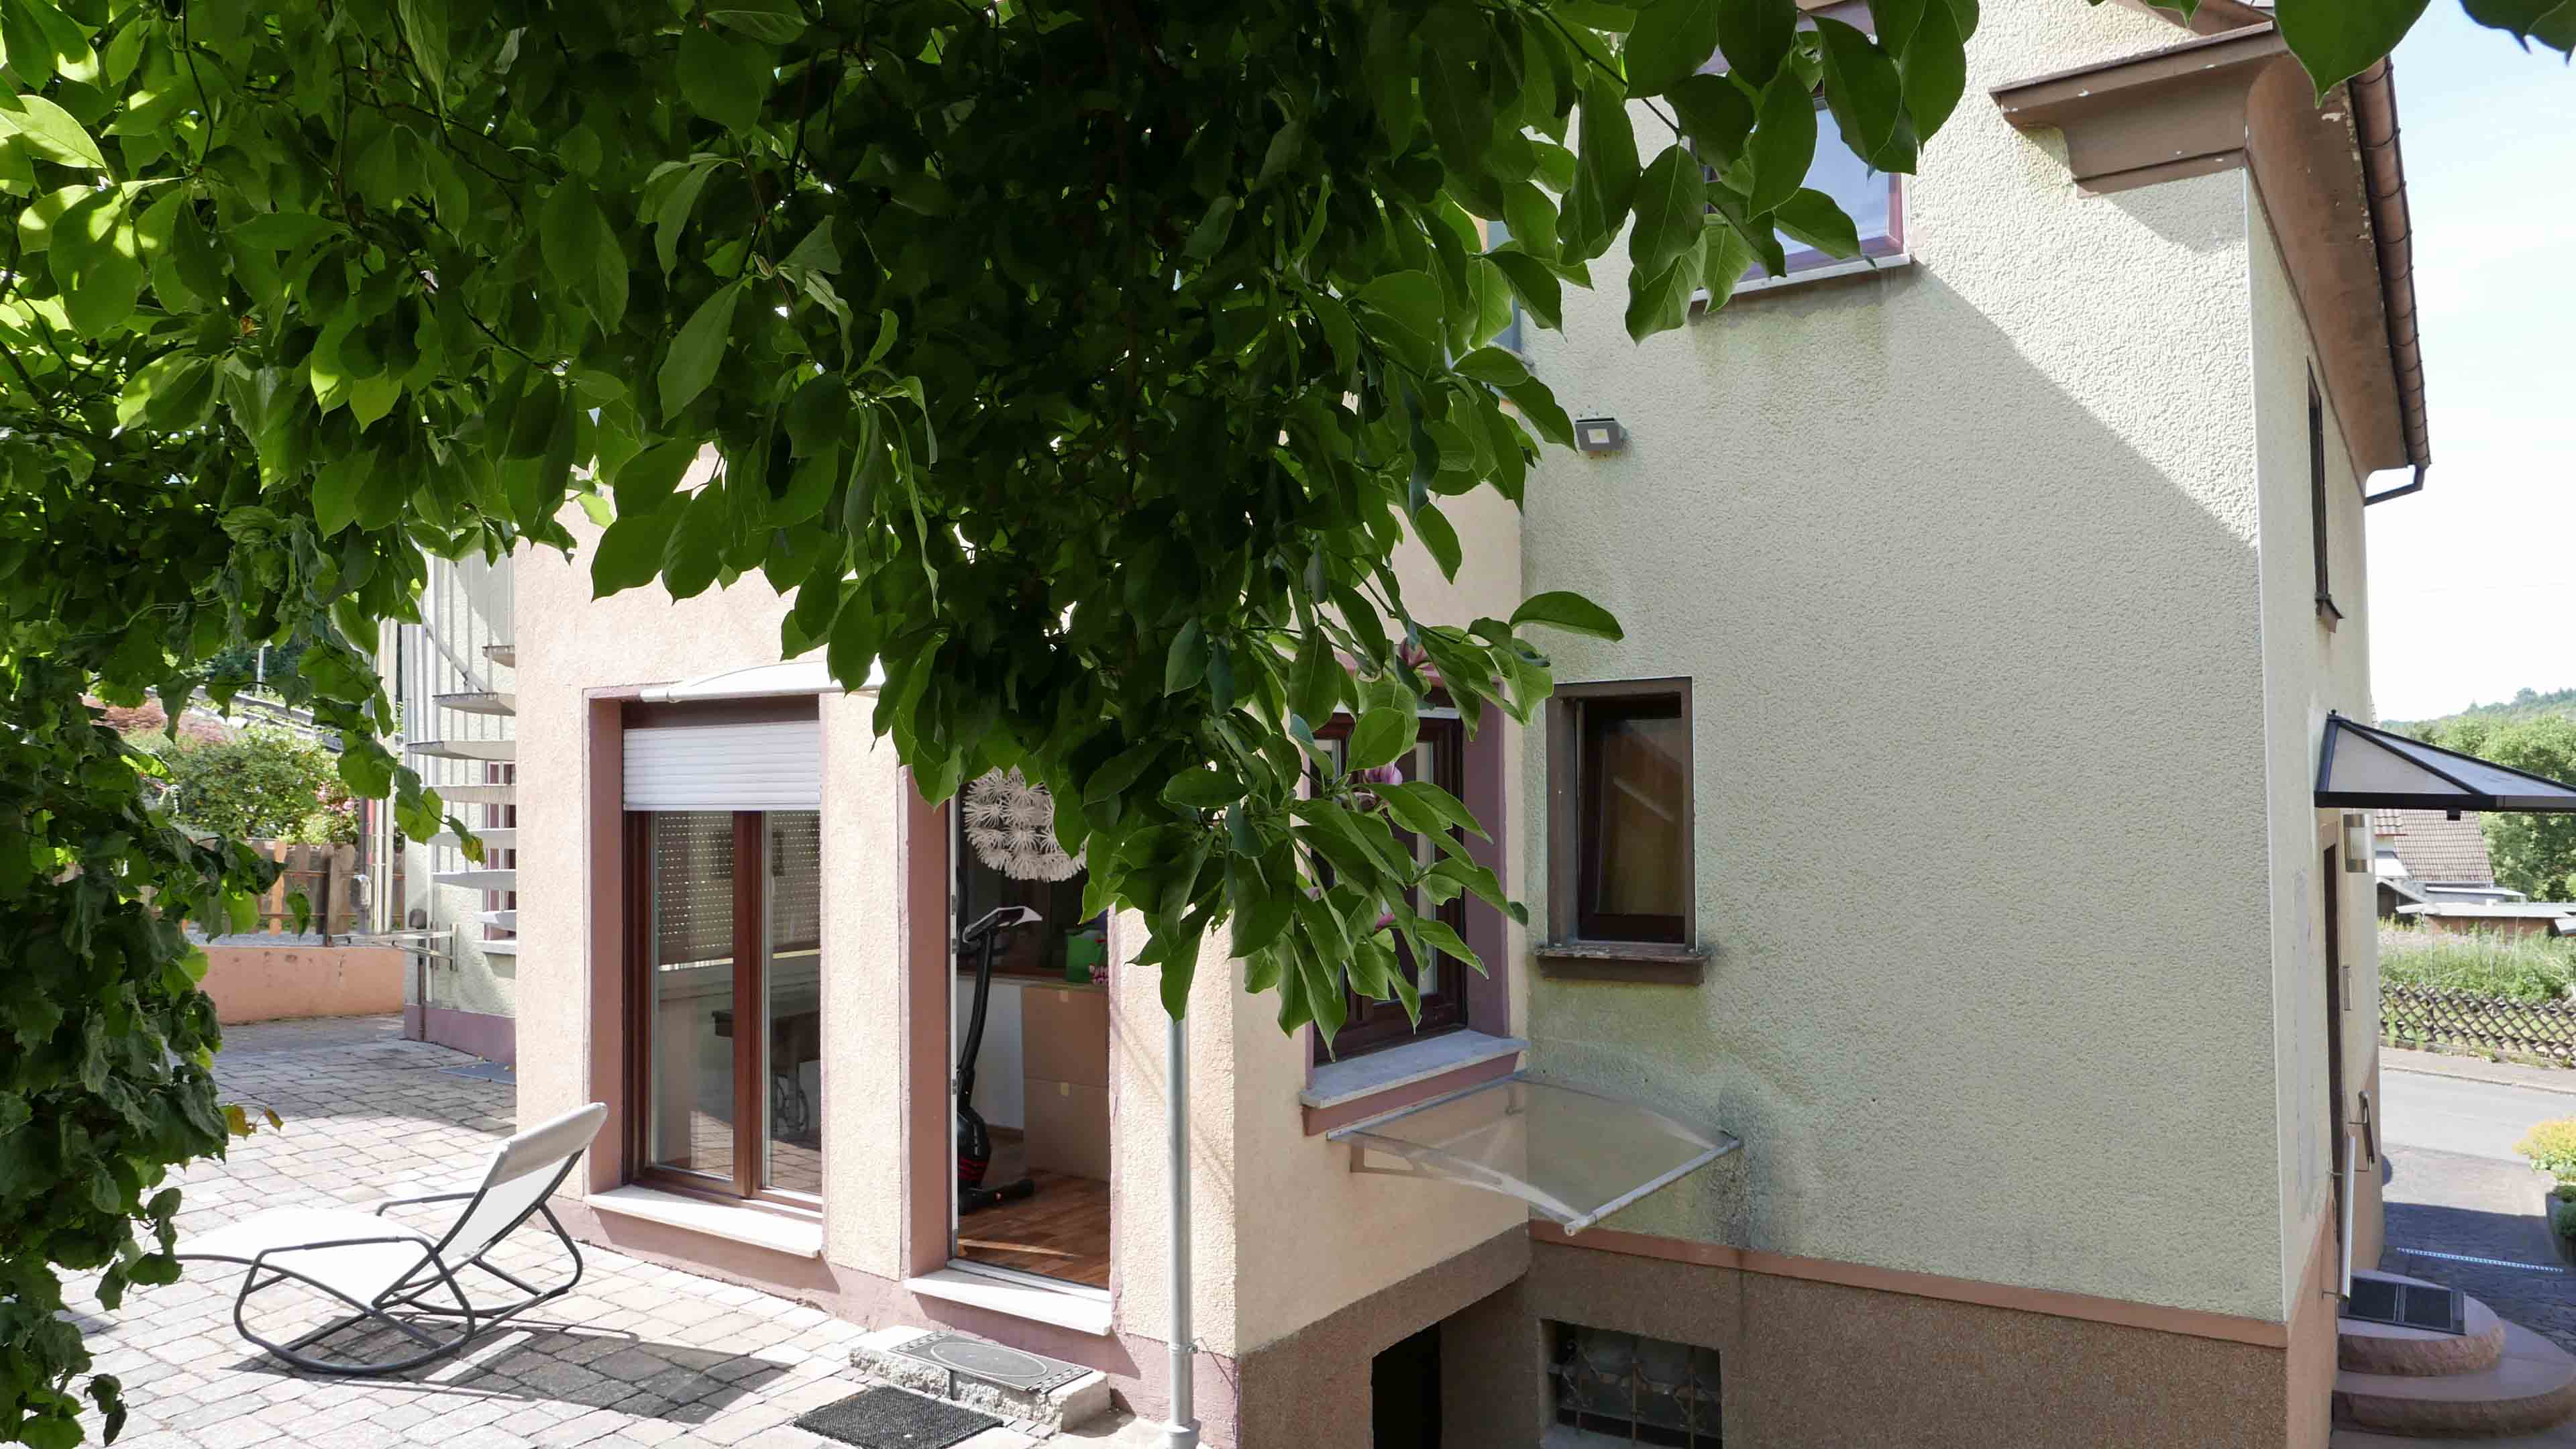 Wissen/Sieg: EFH mit ELW ohne Renovierung sofort beziehbar!, linke Hausecke: Treppe zum Keller (rechts) und Garten